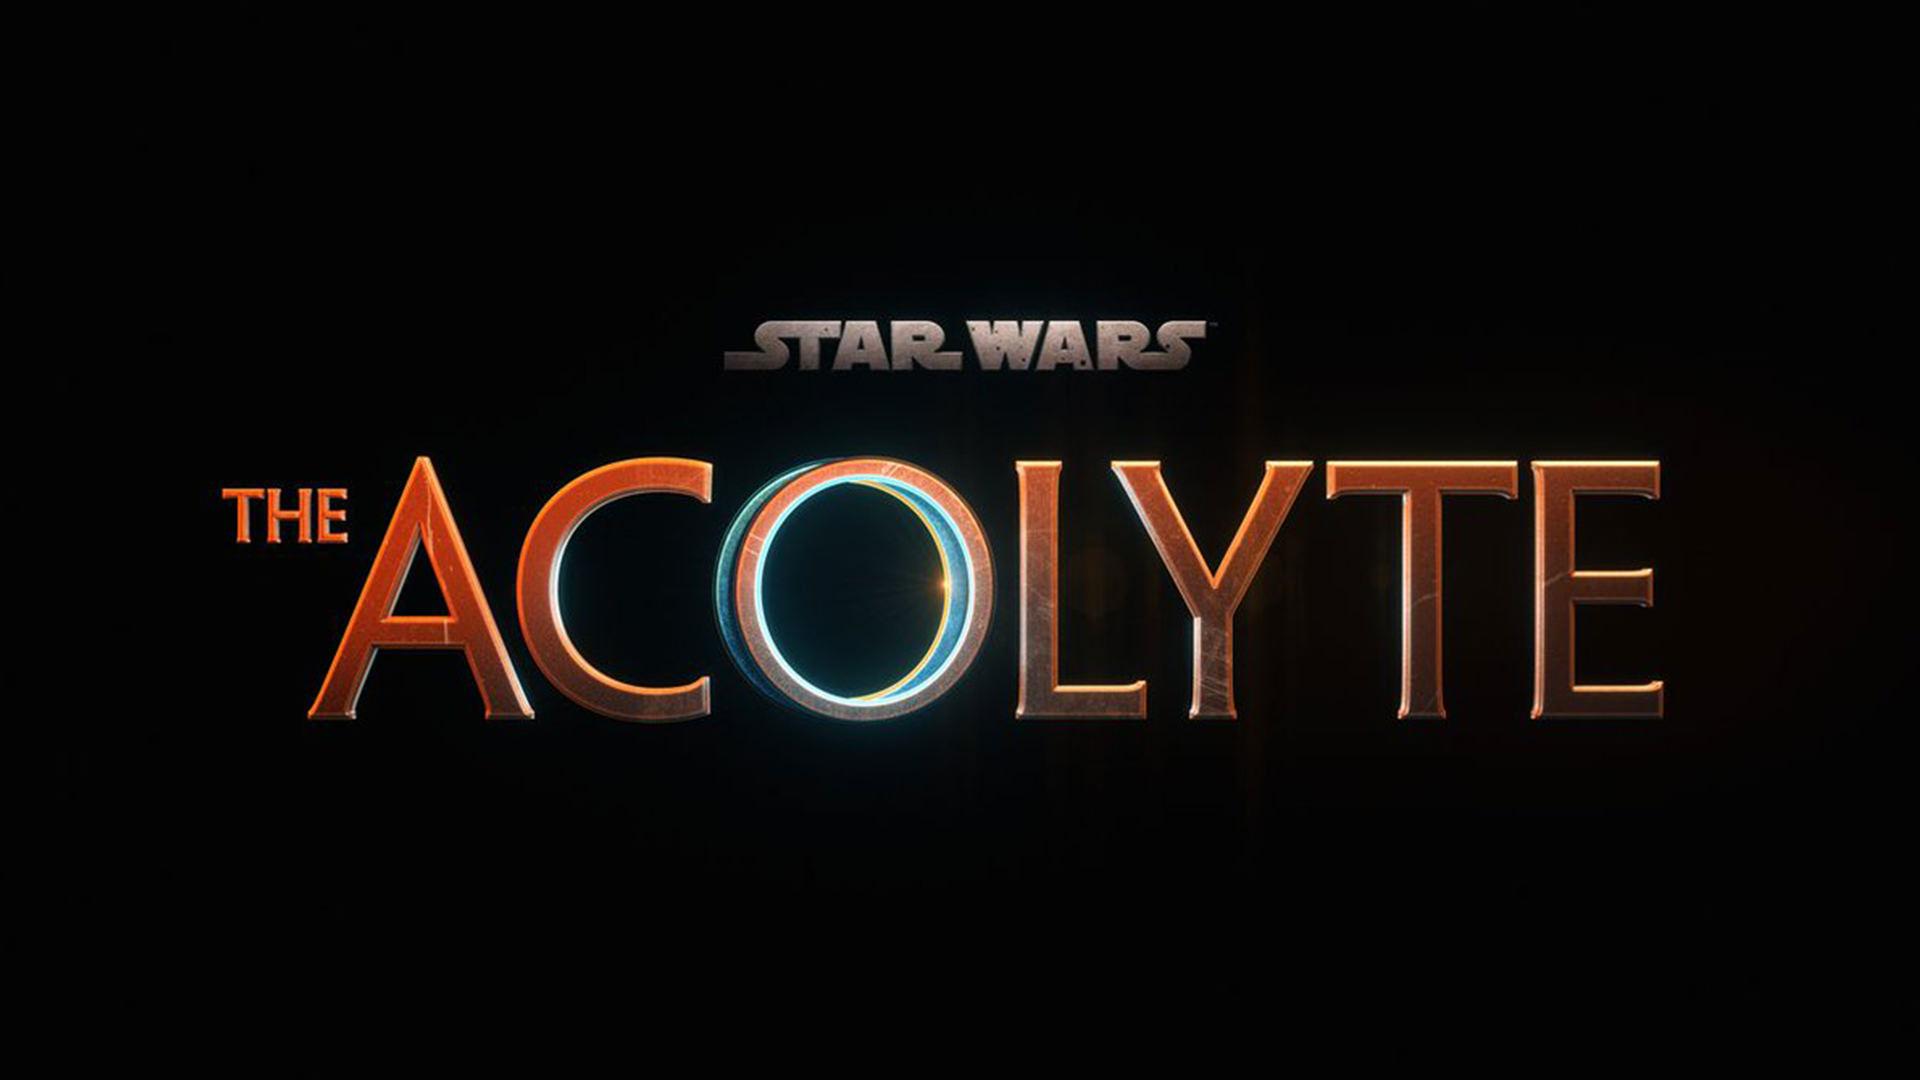 تاریخ شروع سری جدید جنگ ستارگان با نام The Acolyte First پوستر منتشر شد